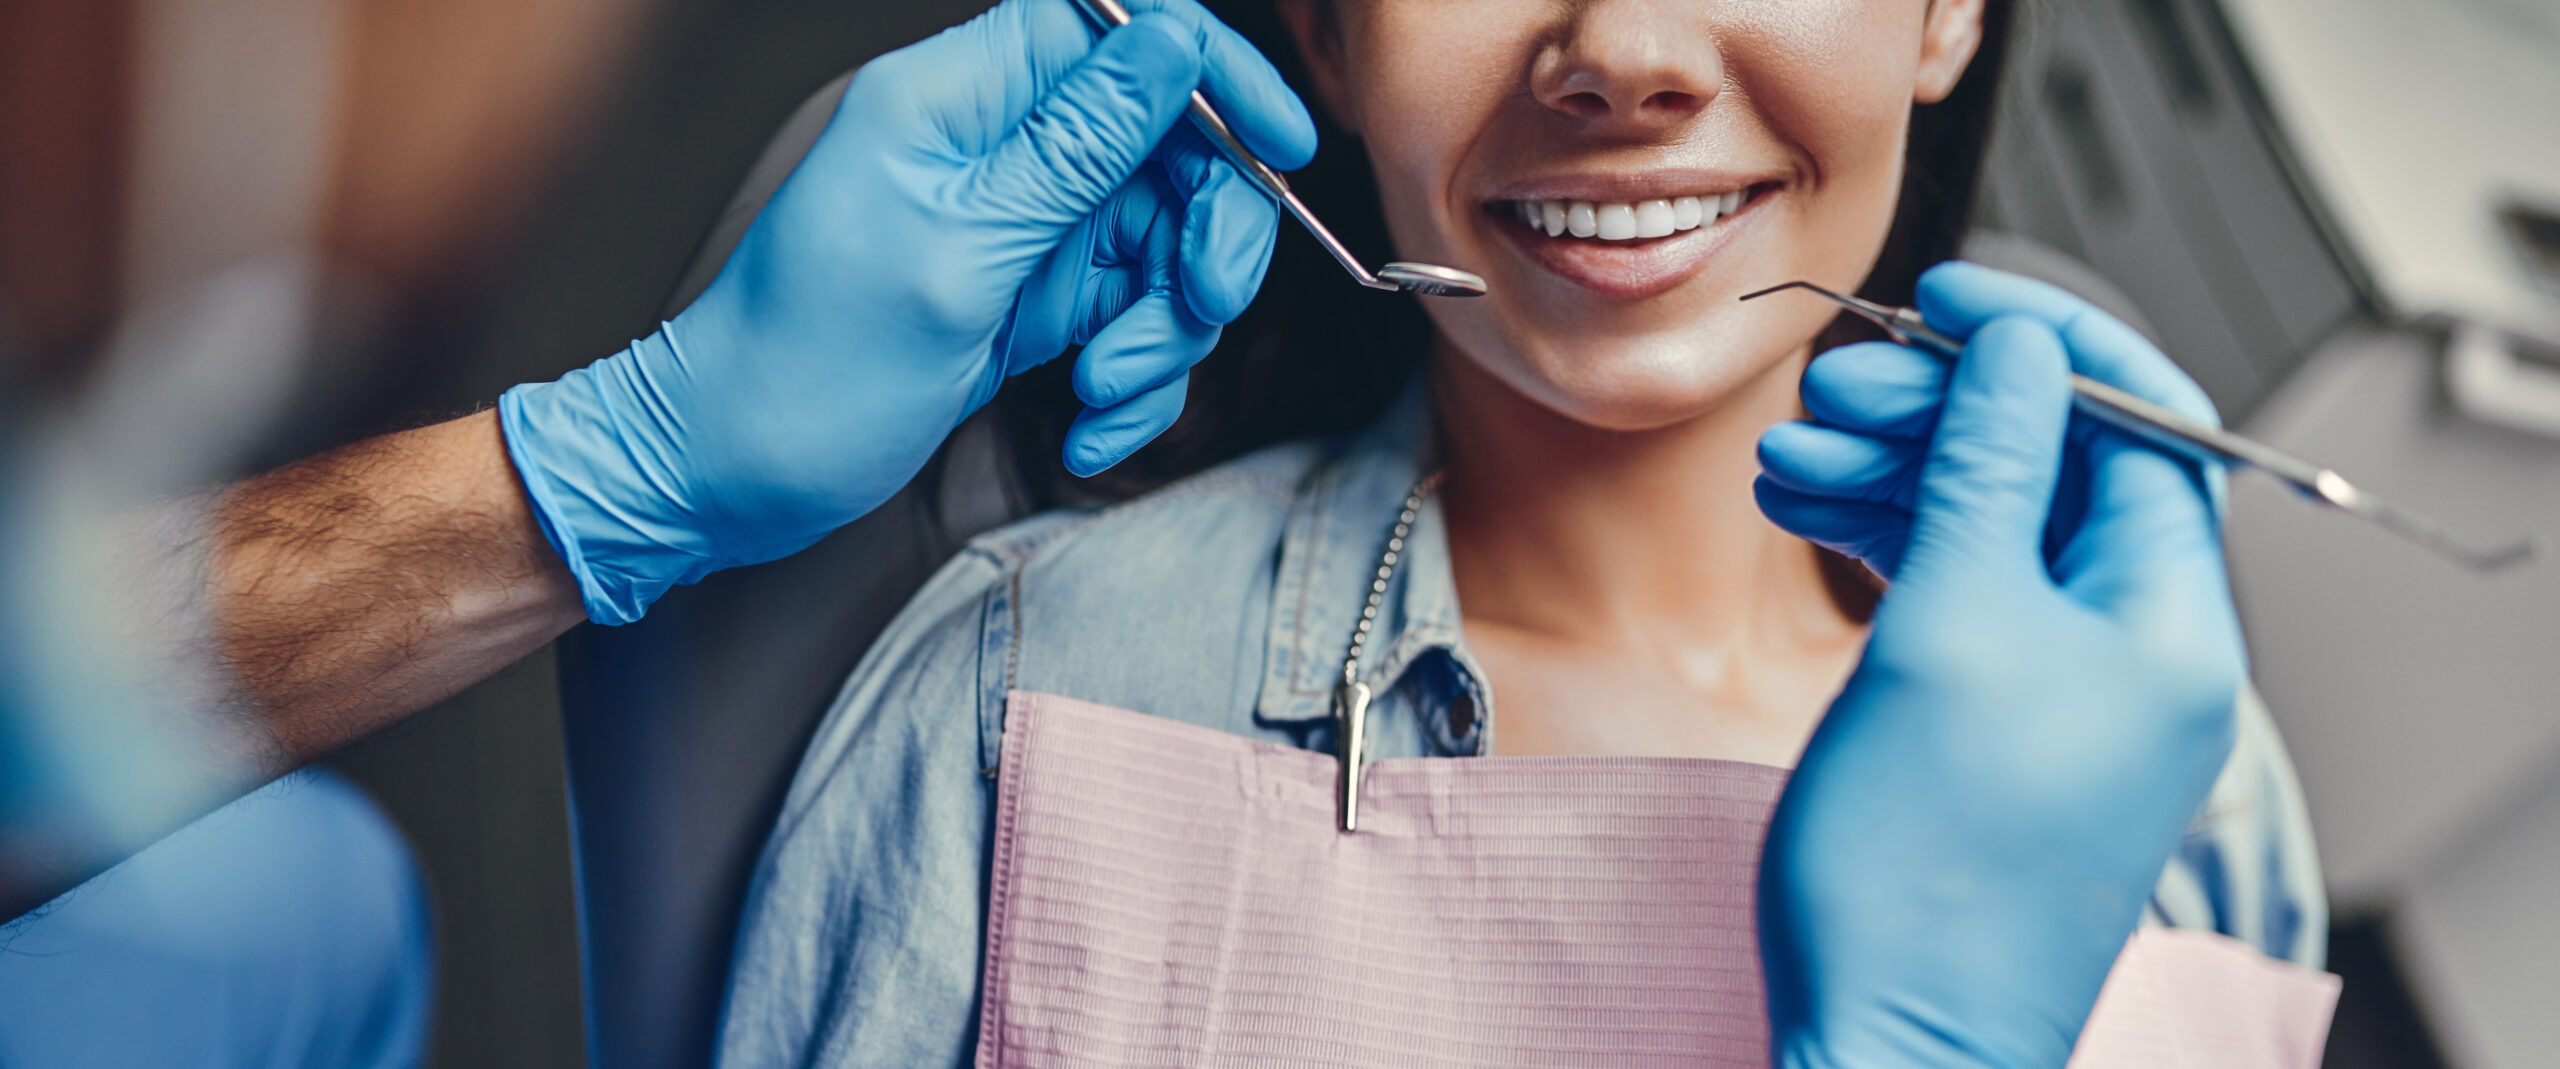 biossegurança na odontologia